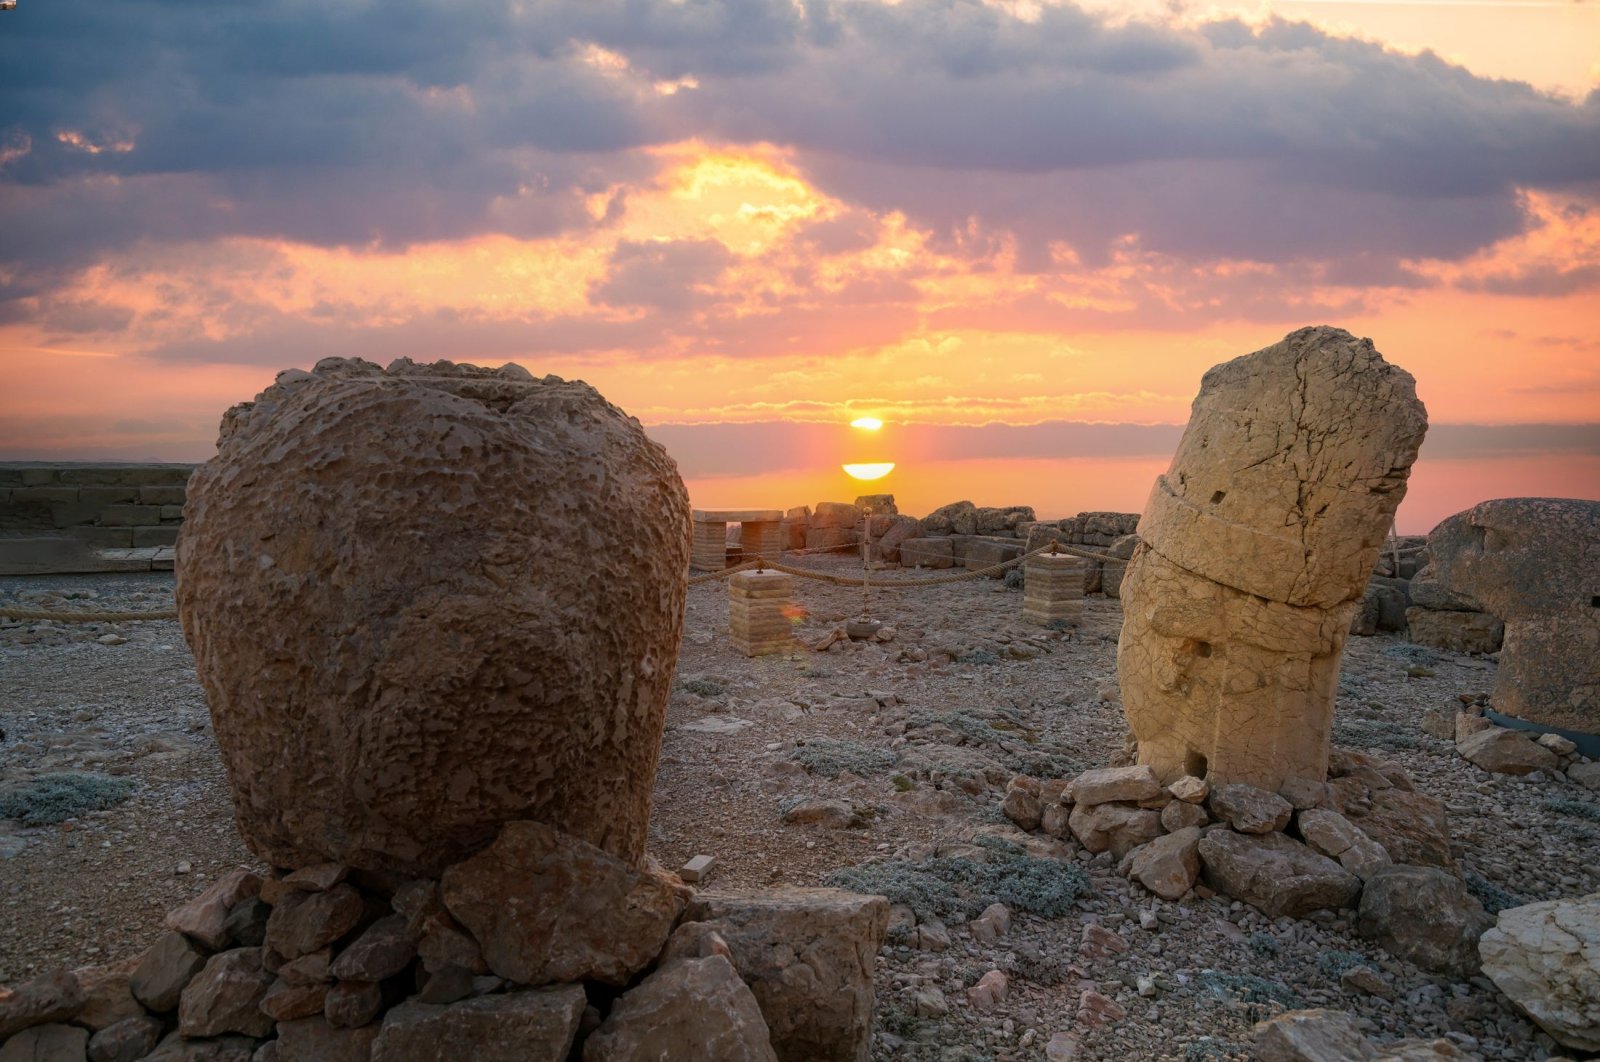 Di antara para dewa, manusia: Gunung Nemrut masih tempat paling mempesona untuk melihat matahari terbit